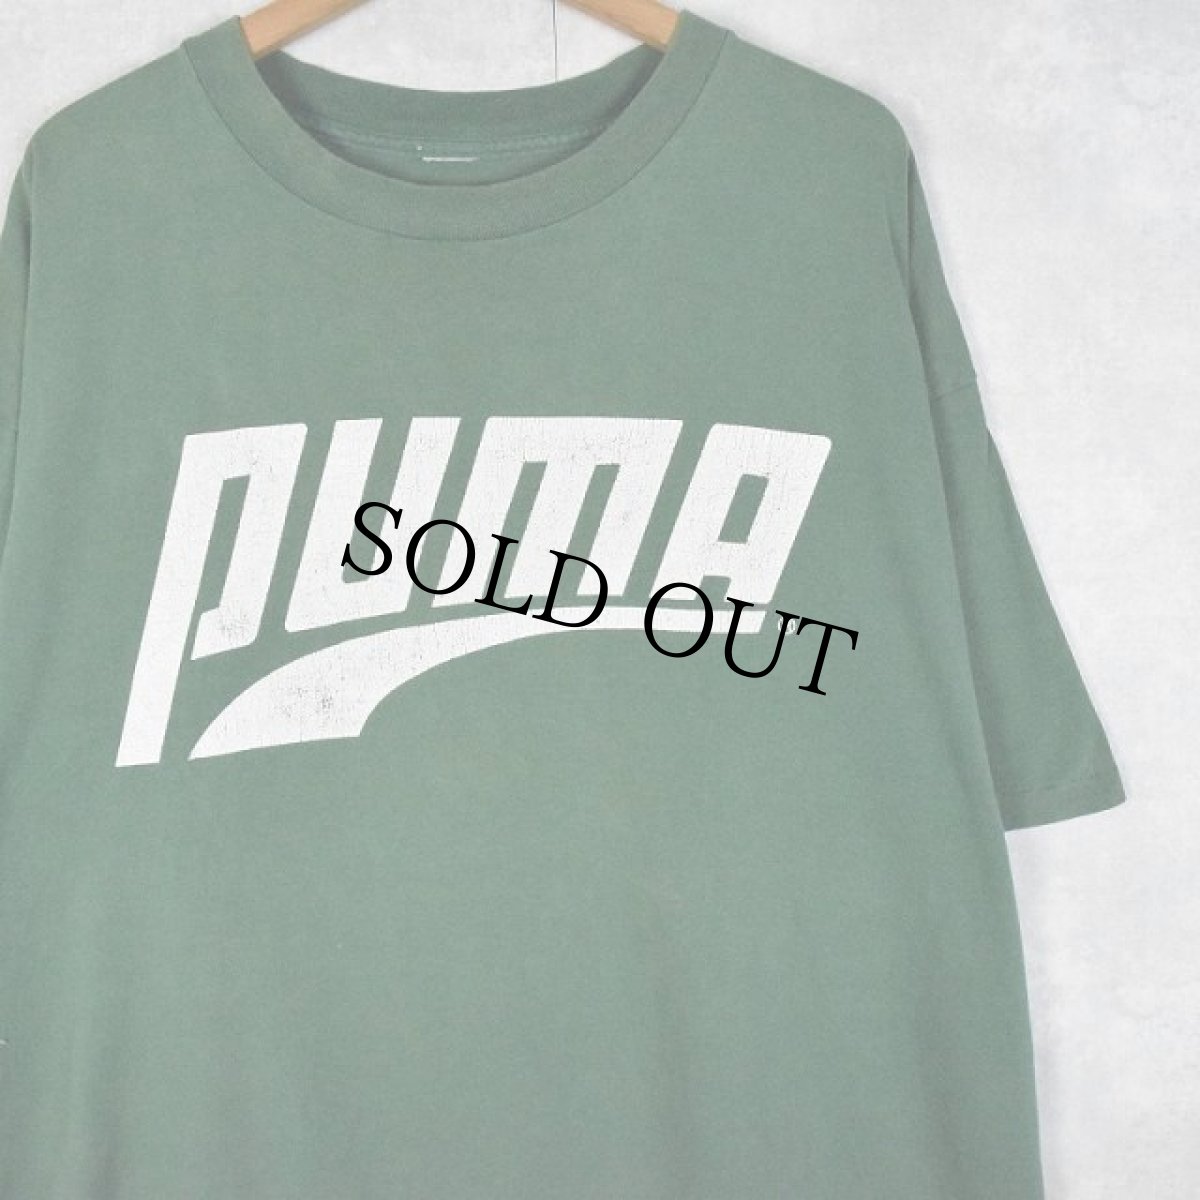 画像1: 90's PUMA ロゴプリントTシャツ (1)